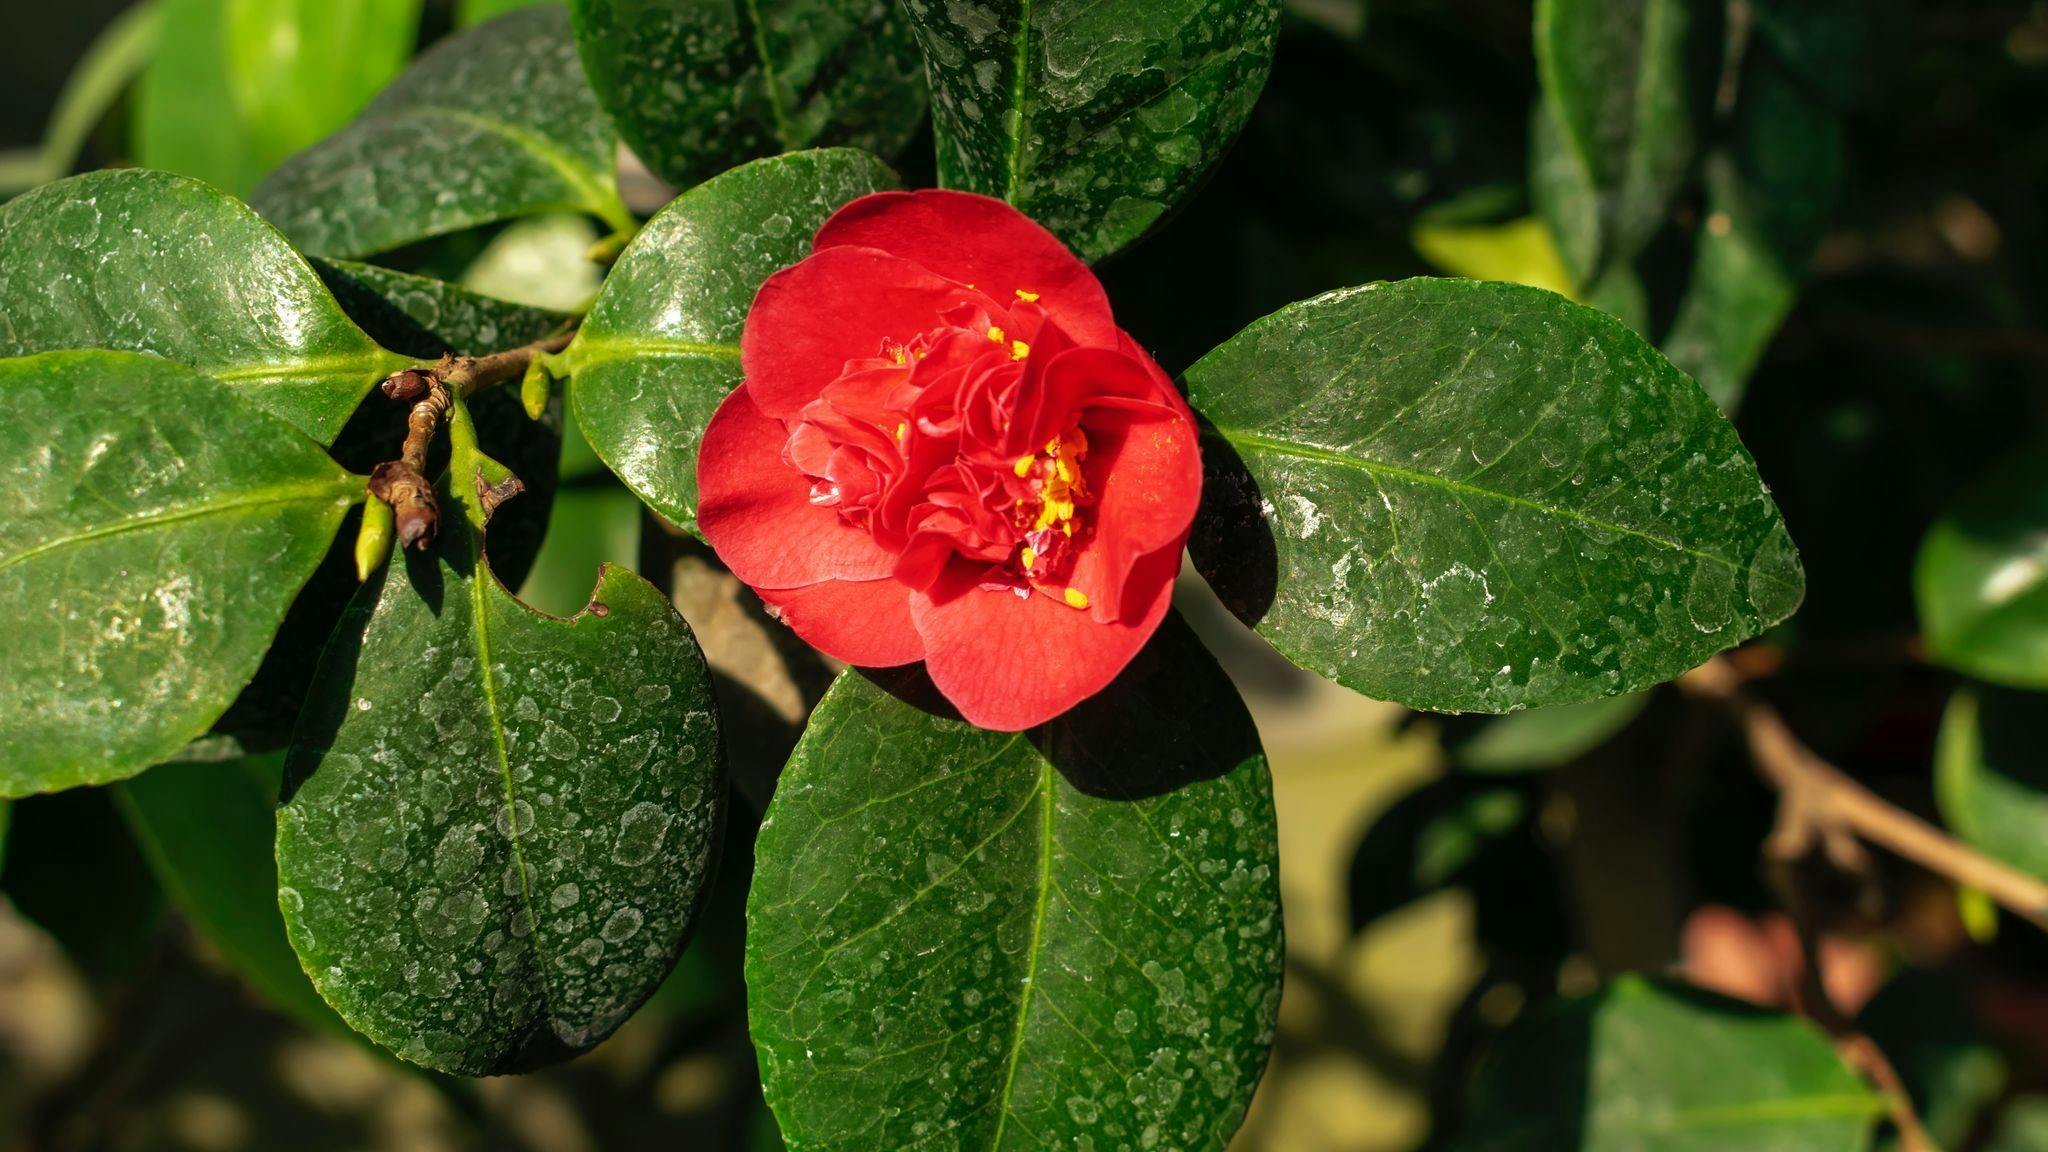 Japanese Camellia - symbolic image